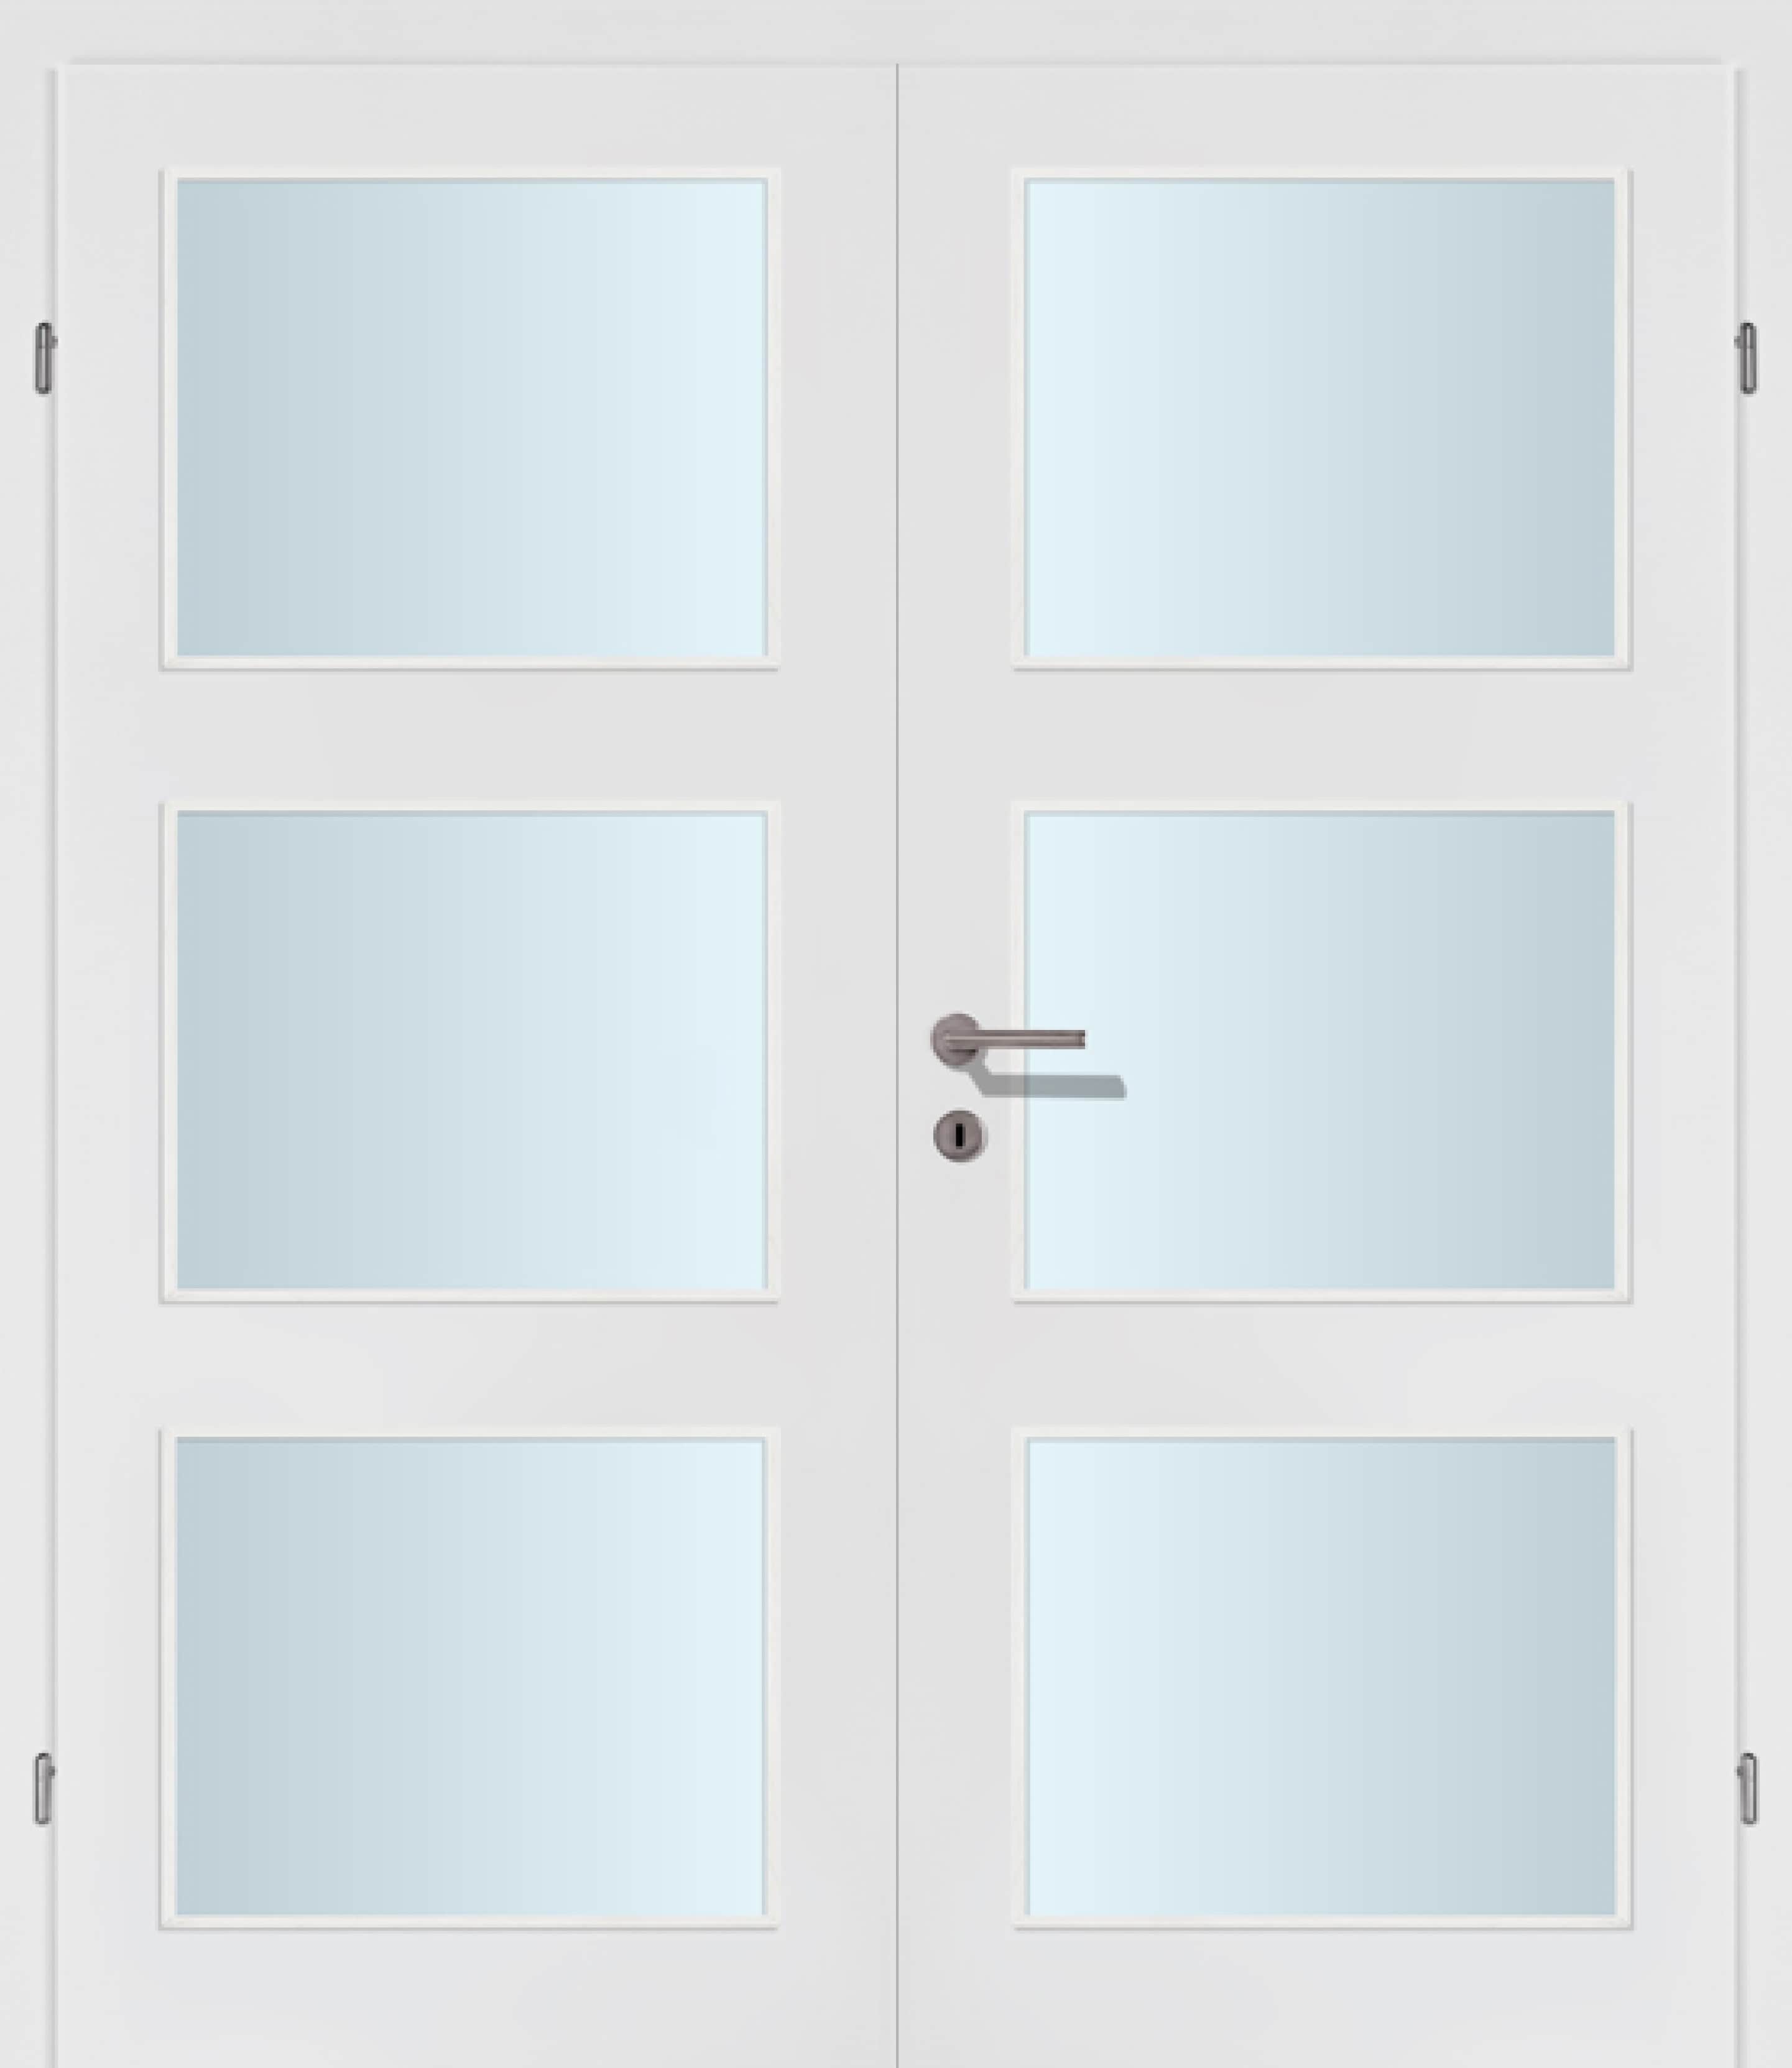 Exklusiv weiss Innentür Inkl. Zarge (Türrahmen) Doppeltüre Inkl. Glaslichte D3